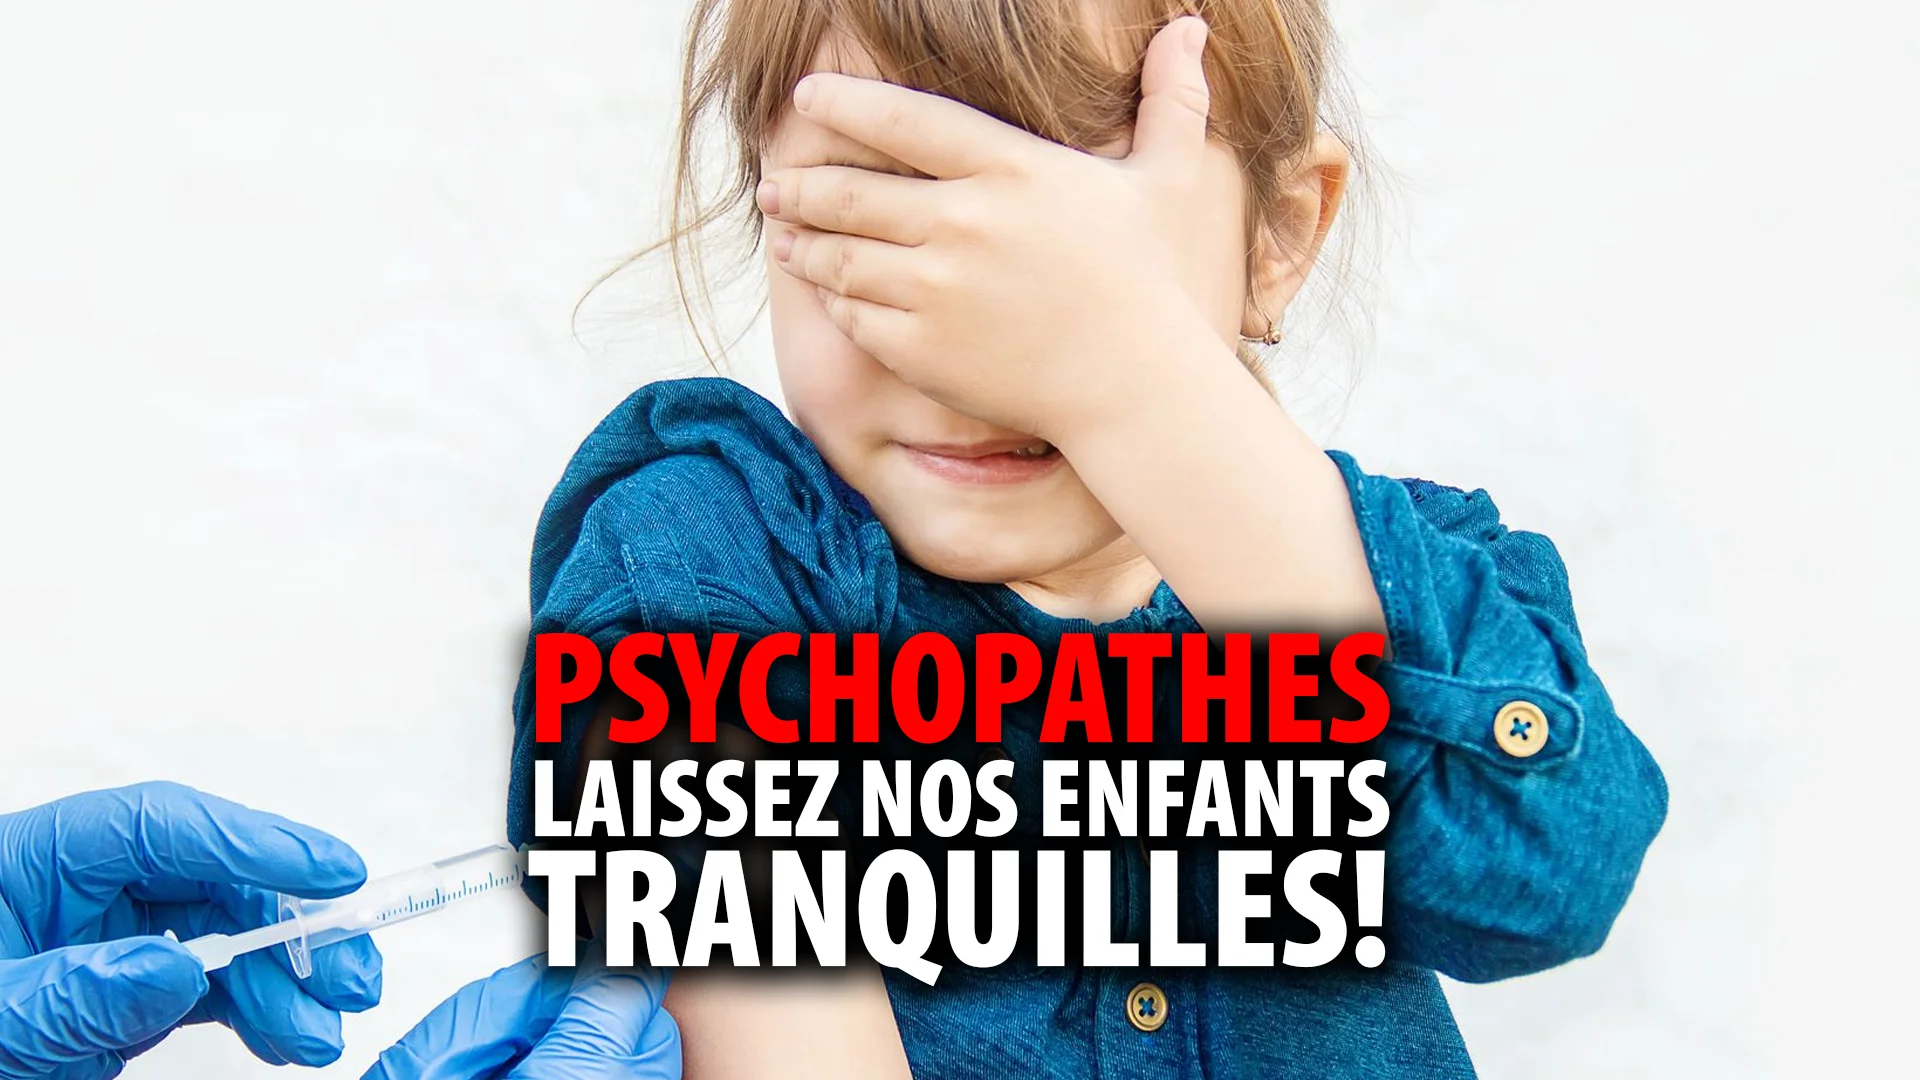 PSYCHOPATHES!  LAISSEZ NOS ENFANTS TRANQUILLES!